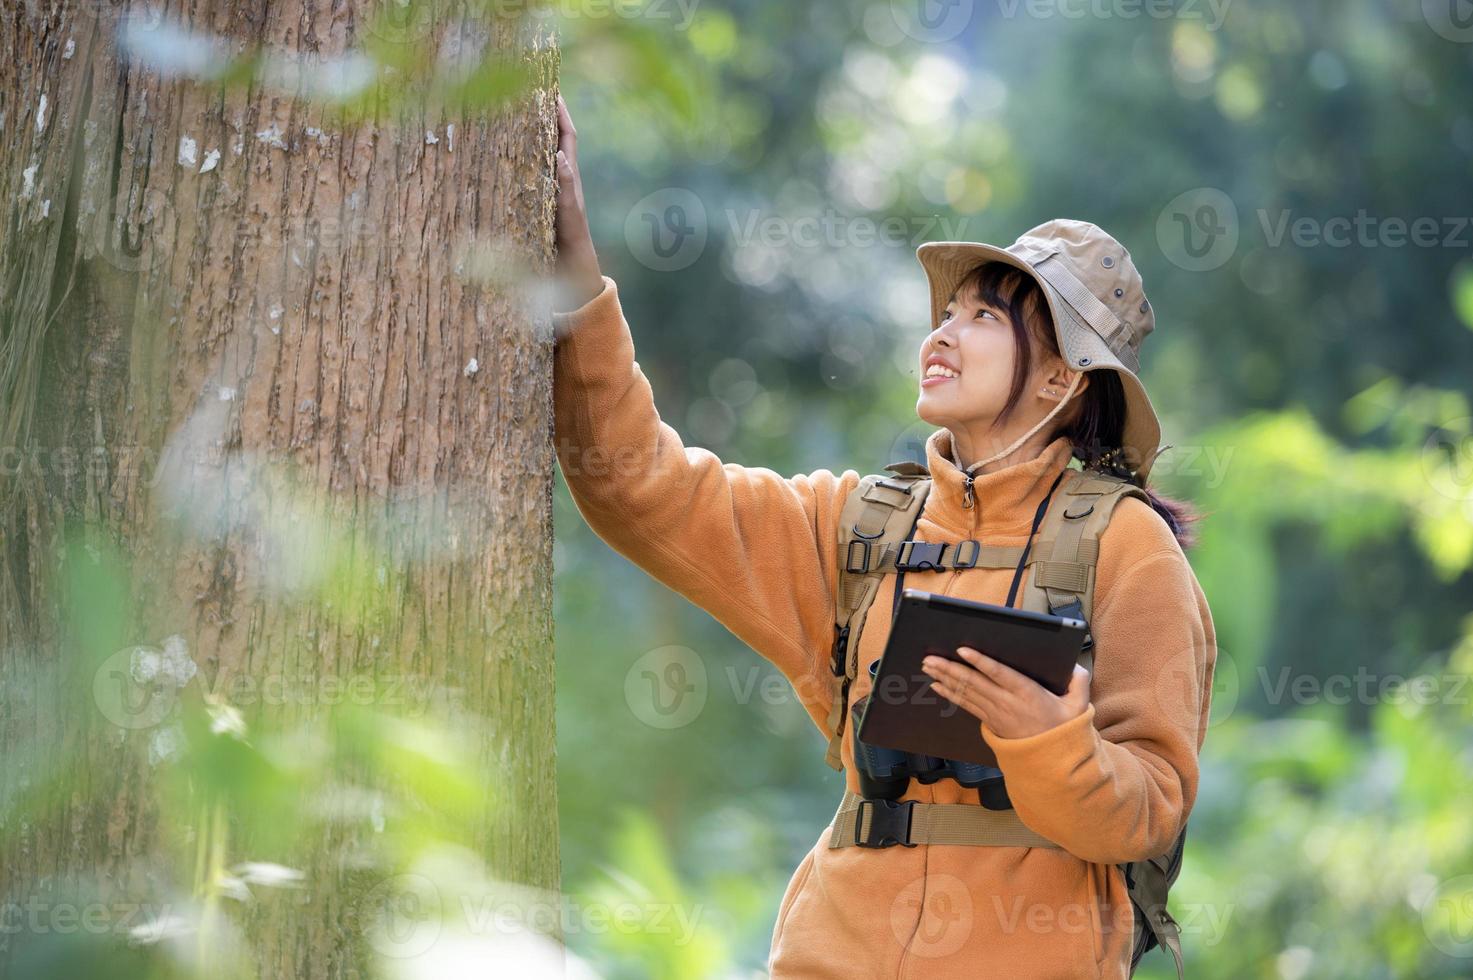 junge touristische Frau in einem gelben Mantel umarmt einen Baum im Wald der Öko-Liebe, die zu den Baumwipfeln aufblickt junge asiatische Frau, die einen großen ökologischen Baum untersucht foto